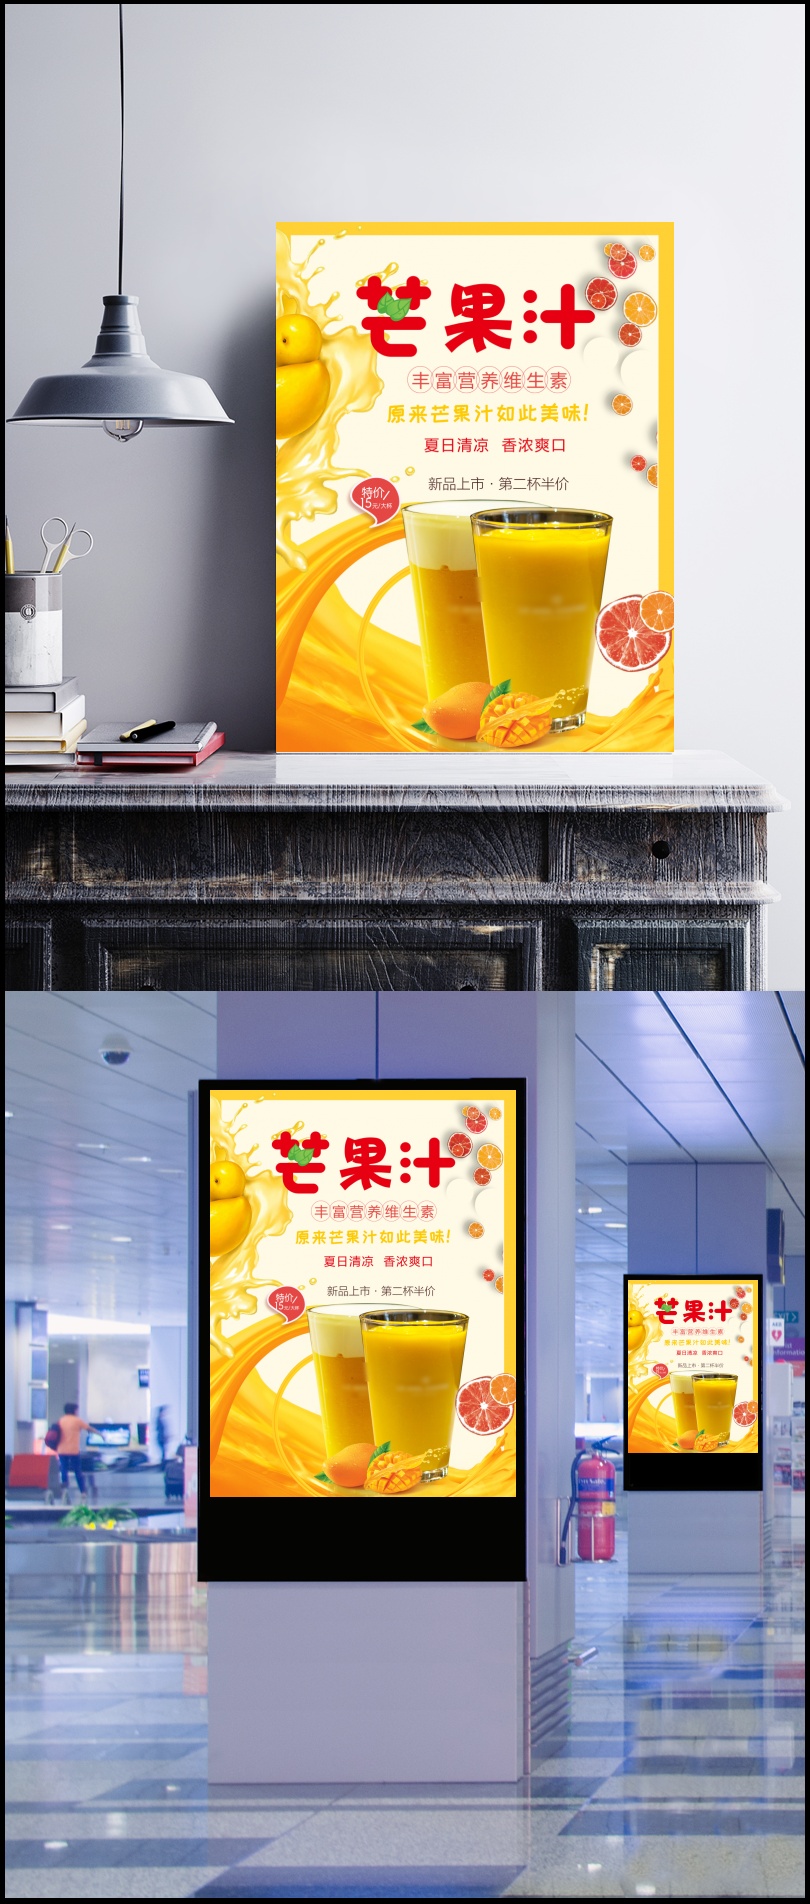 芒果汁特价活动宣传海报图片